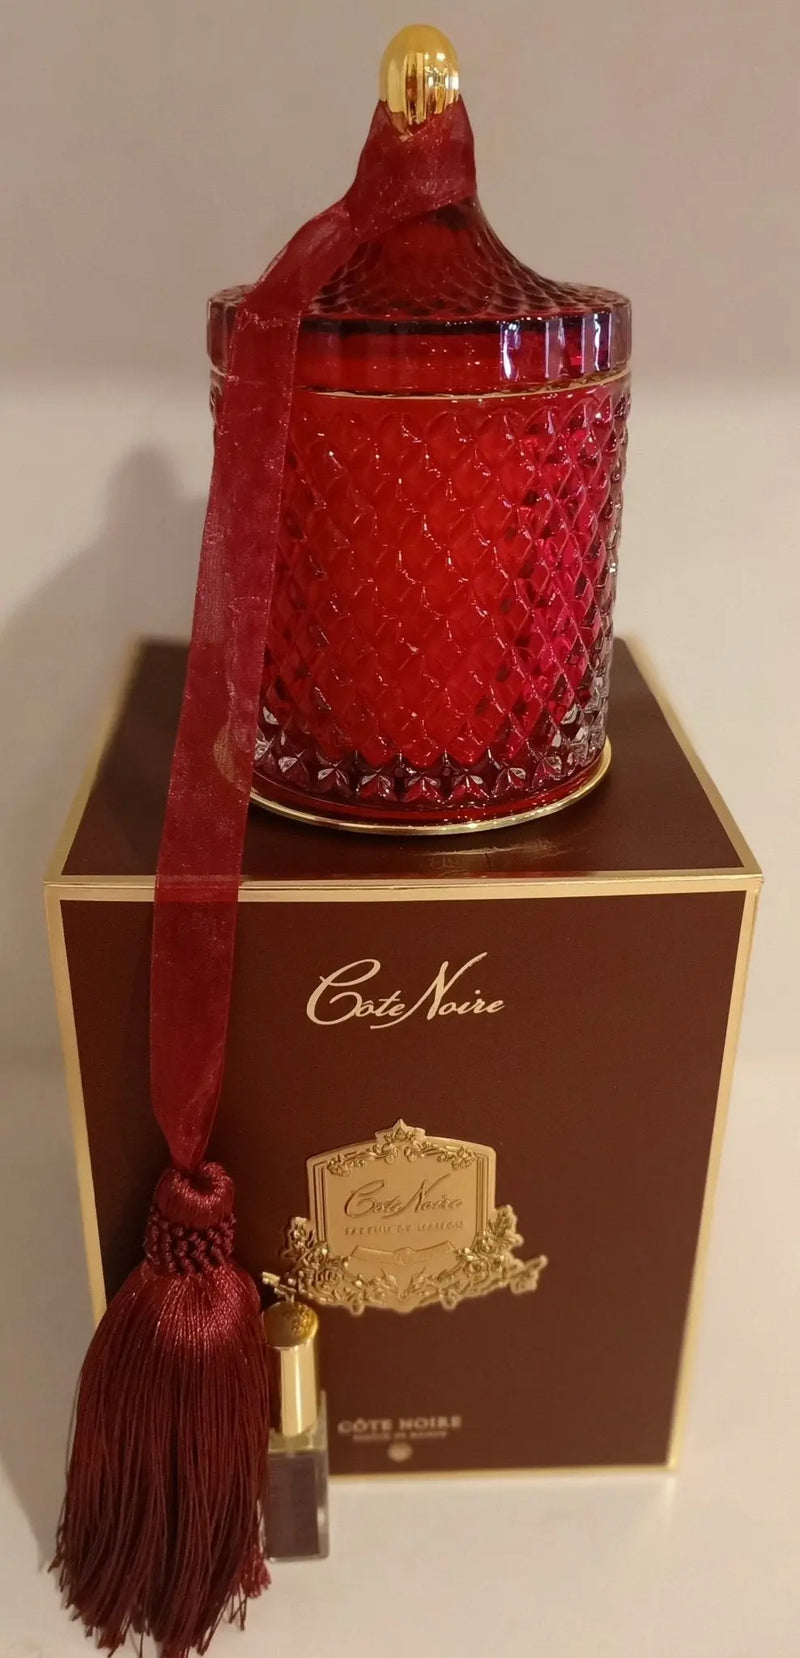 Cote Noire Grand Red & Gold Art Deco Candle - Rose Oud - GML45011 Cote Noire